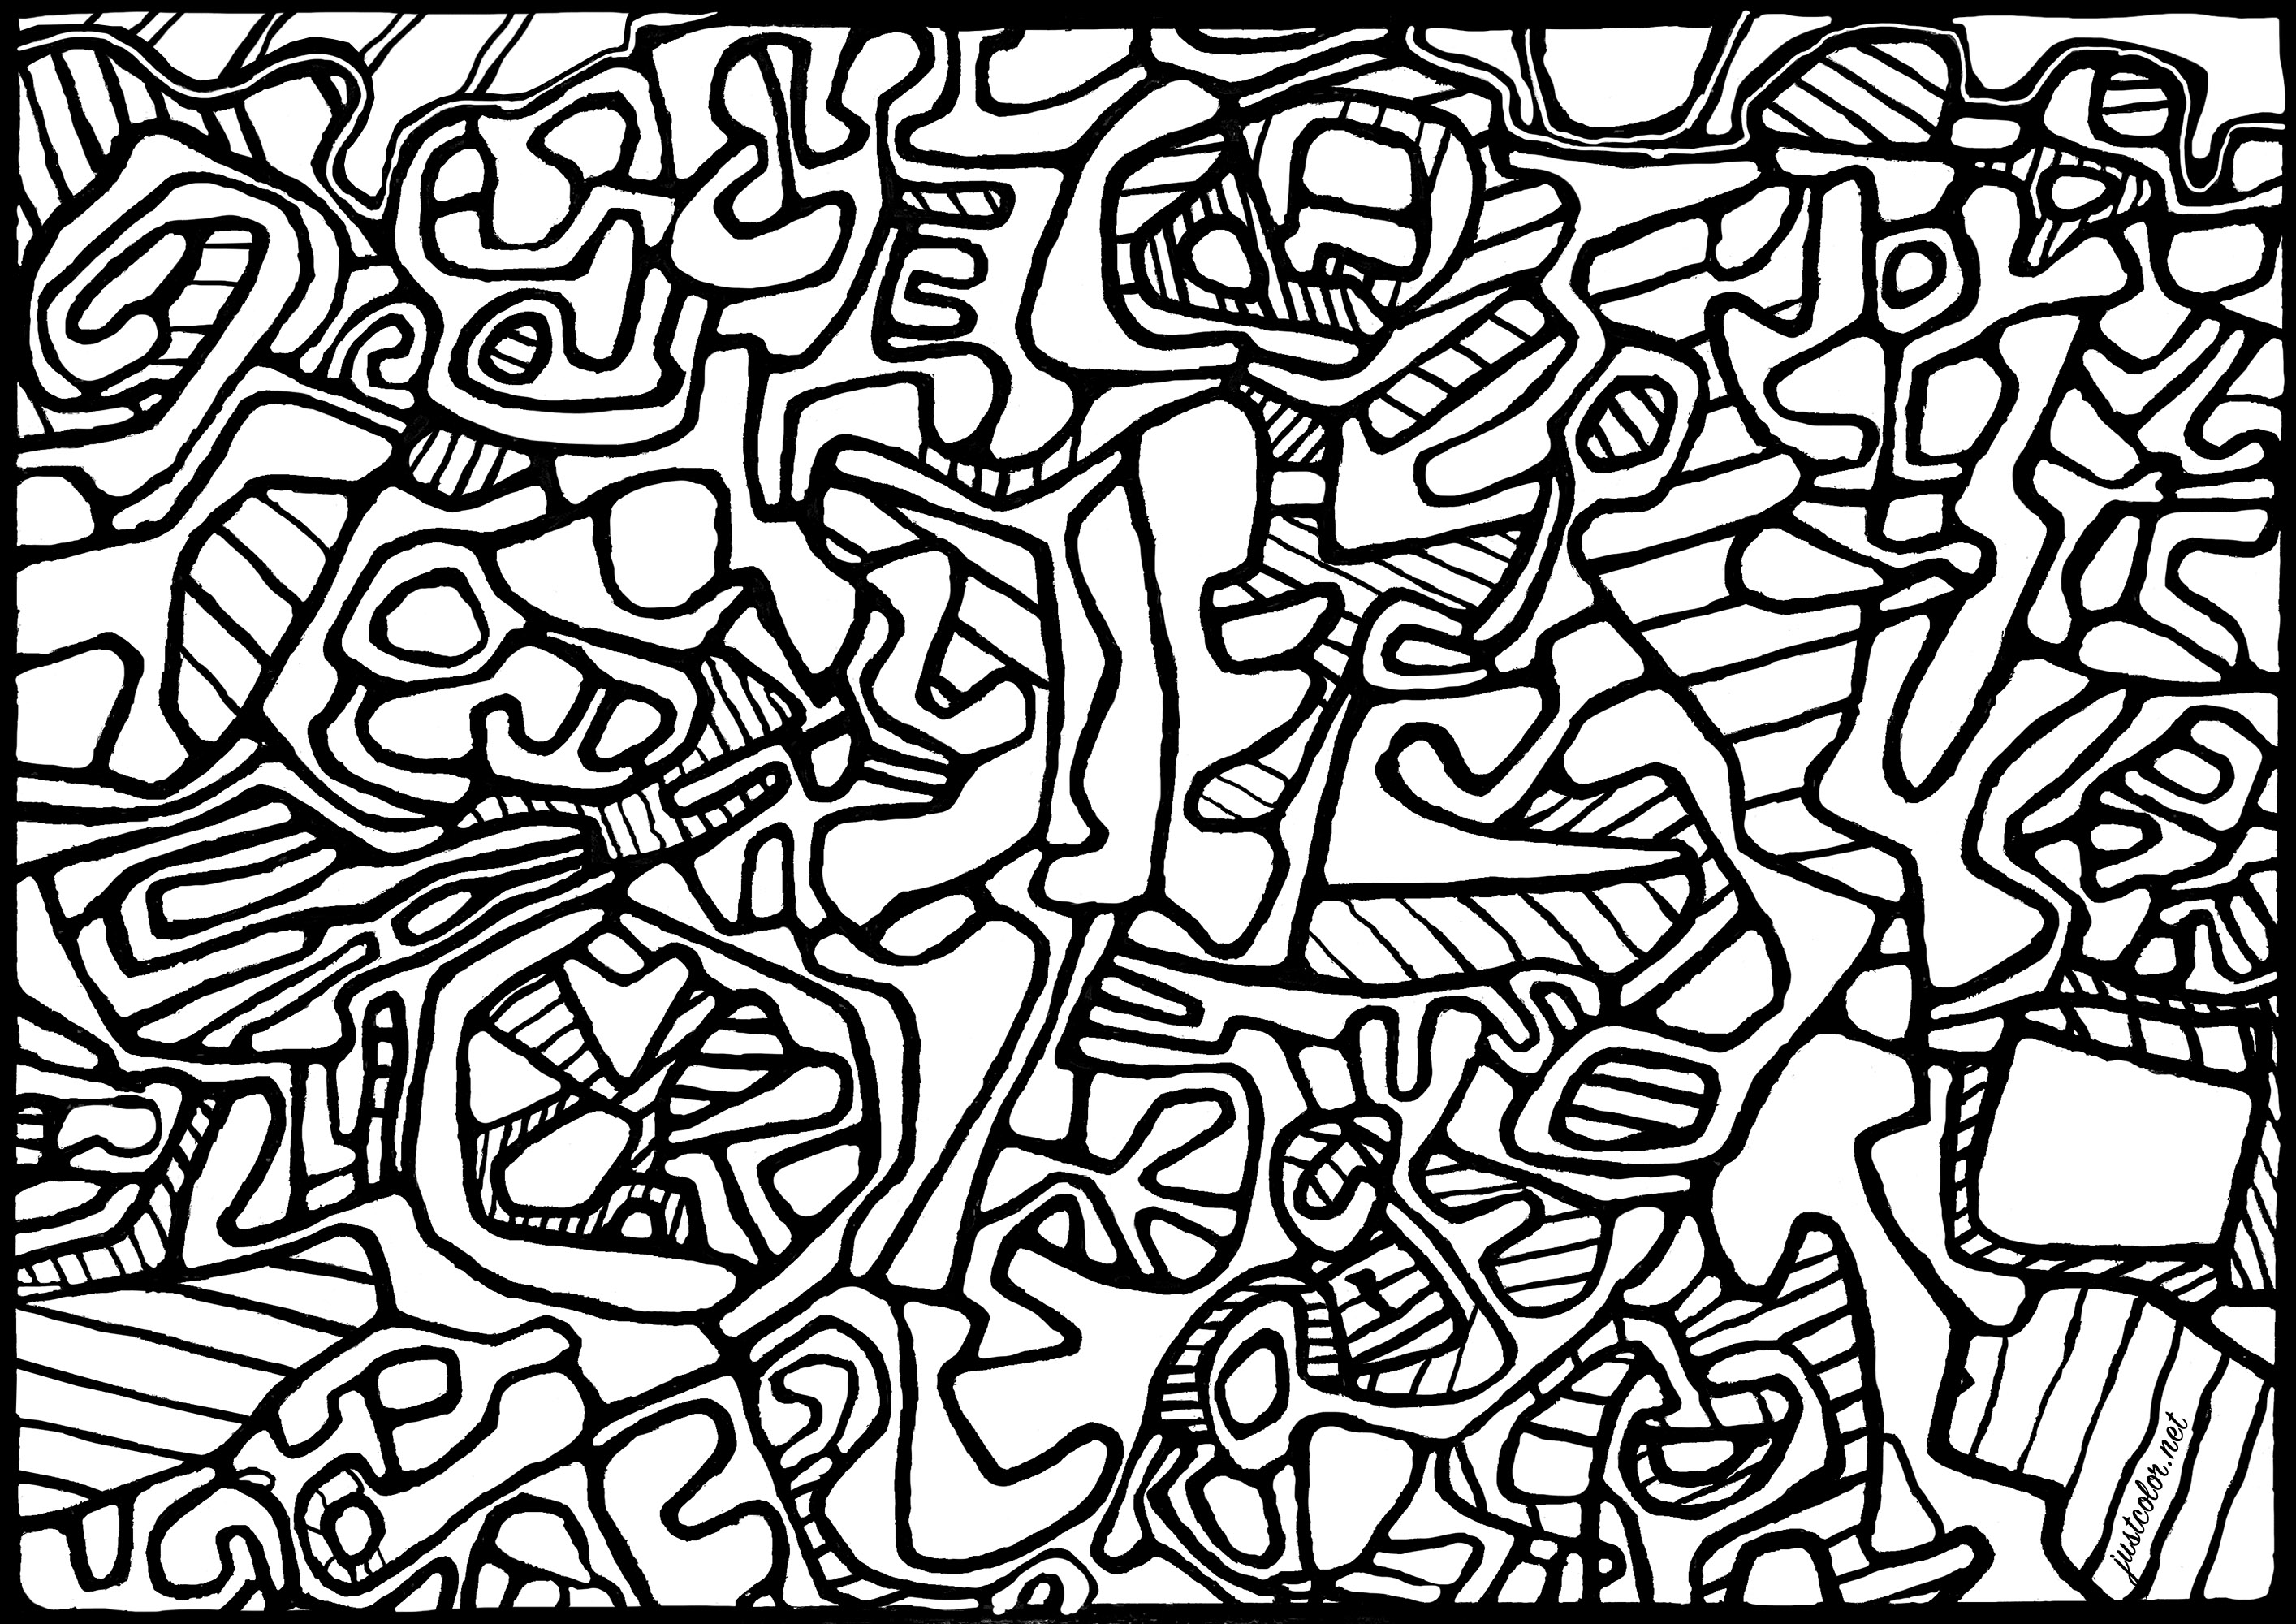 Ausmalen nach dem Gemälde 'Jardin L'Hourloupe' von Jean Dubuffet (1966). Jean Dubuffet begann seine Karriere als Landschafts- und Porträtmaler. Er interessierte sich für den freien, instinktiven Ausdruck des ungeschulten Künstlers, gründete die Art-Brut-Bewegung und schuf zahlreiche Werke in dieser Ästhetik, wobei er Materialien wie Beton und Erde verwendete. Er entwickelte auch das Konzept der 'Hourloupe', ein fantastisches Universum, das von seltsamen, grotesken Figuren bevölkert wird. Dubuffet war auch ein leidenschaftlicher Sammler von Art Brut und legte eine bedeutende Sammlung an, die weltweit ausgestellt wurde.